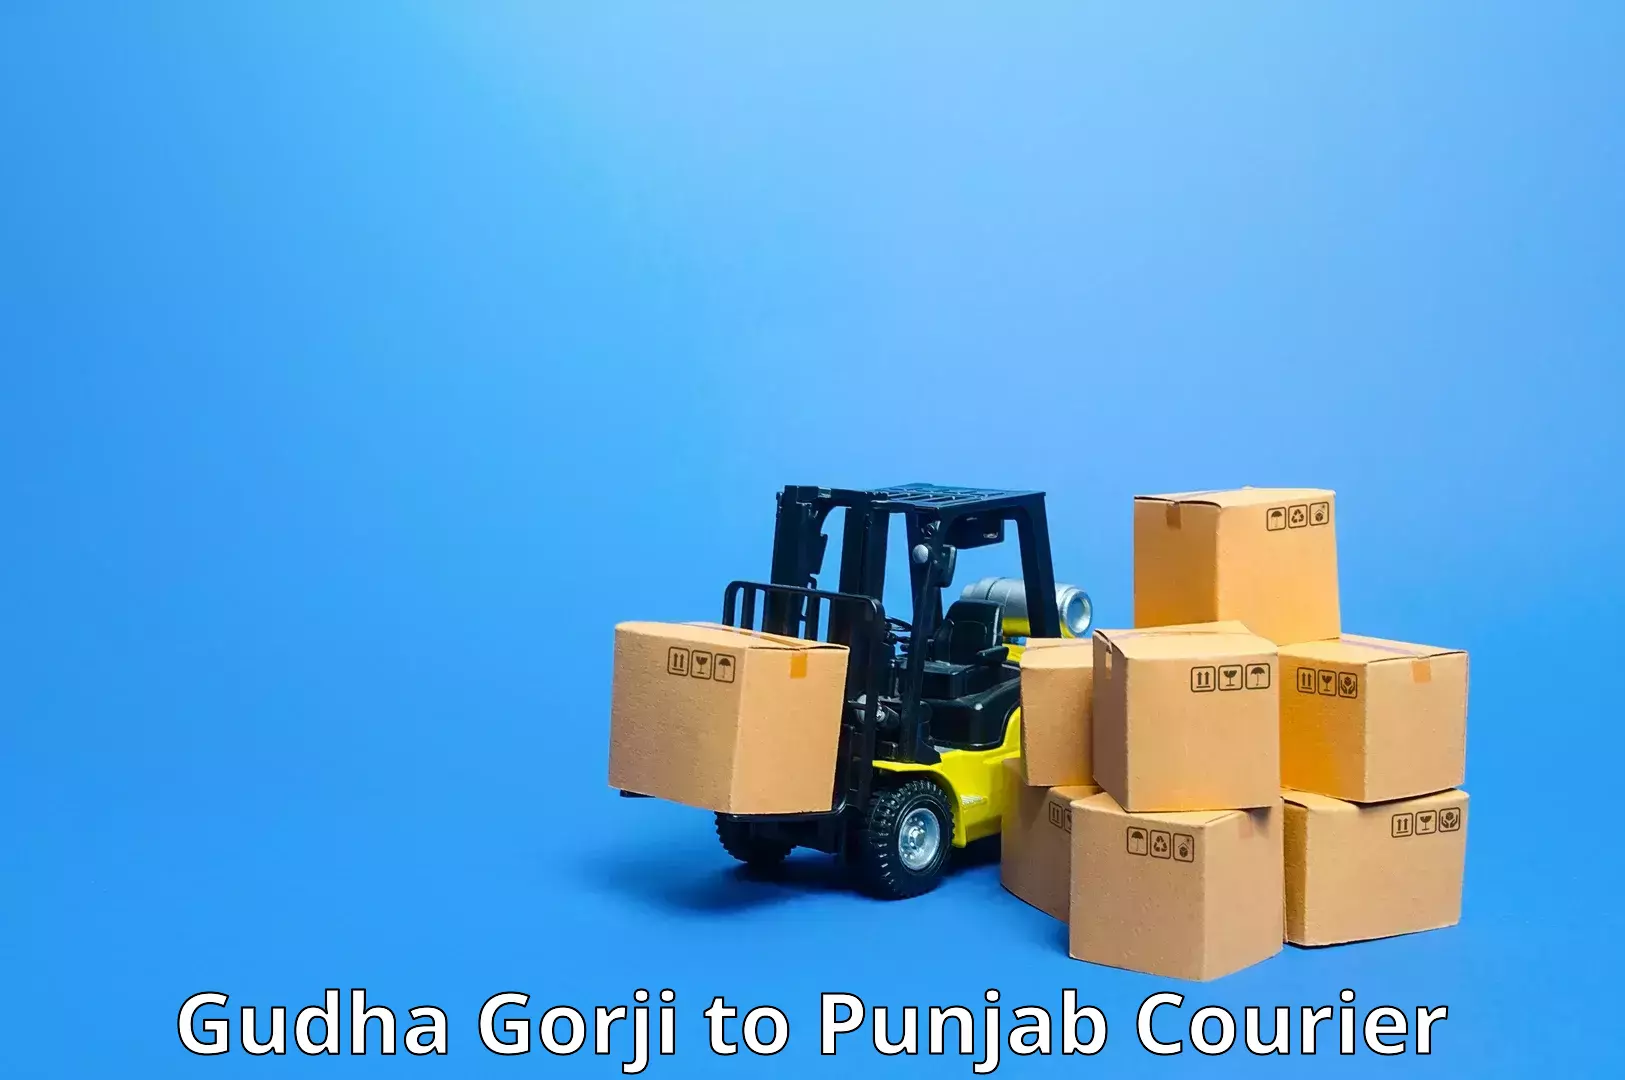 Express mail service Gudha Gorji to Punjab